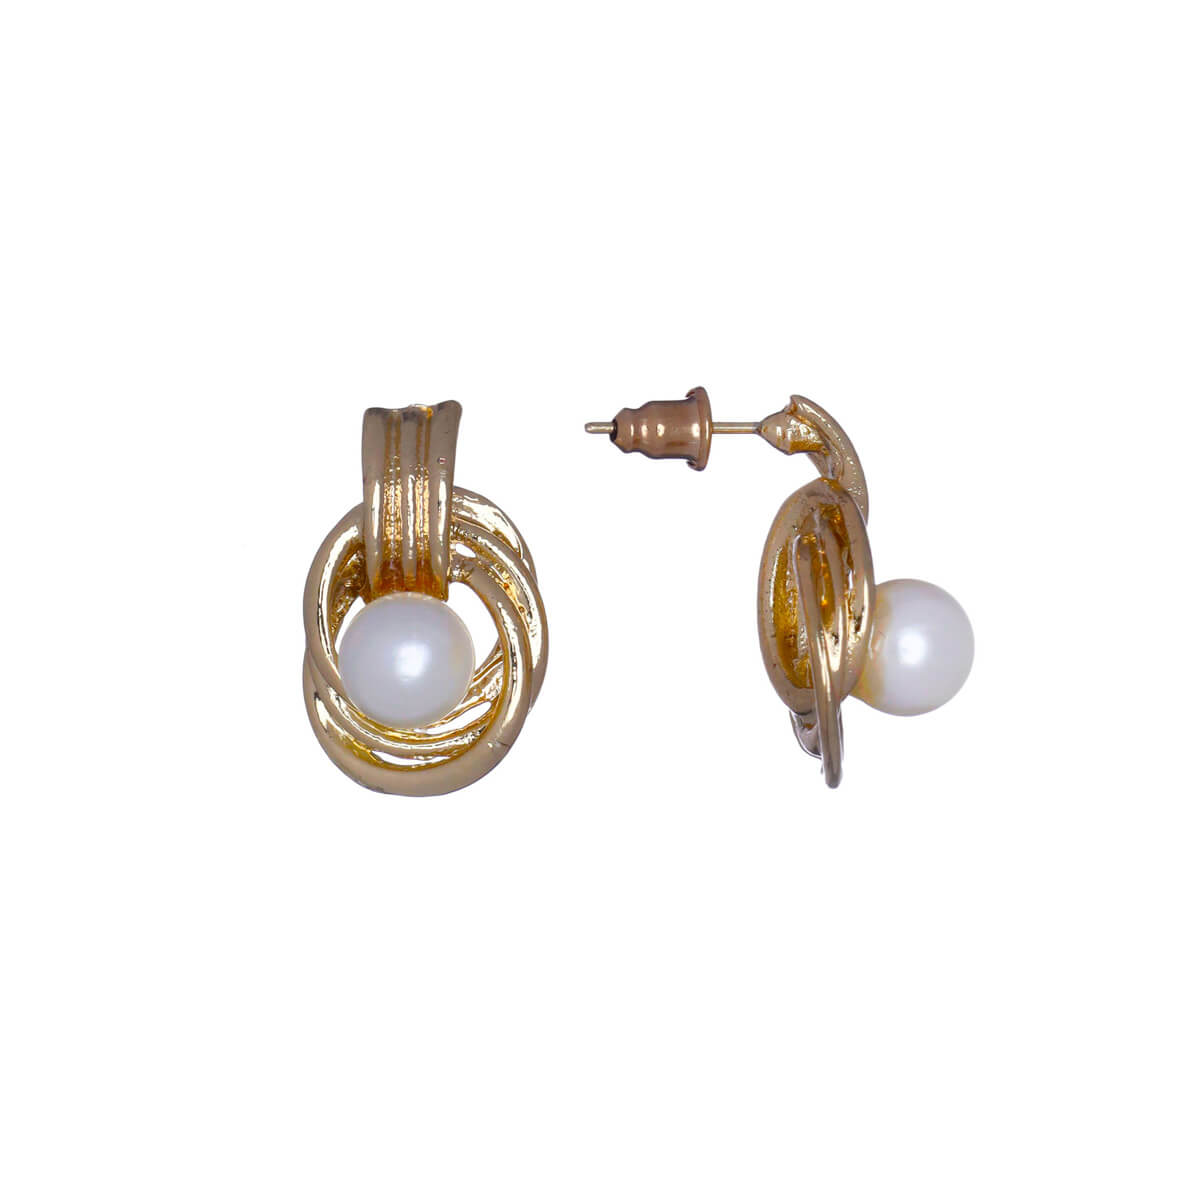 Pearl earrings in a metal frame